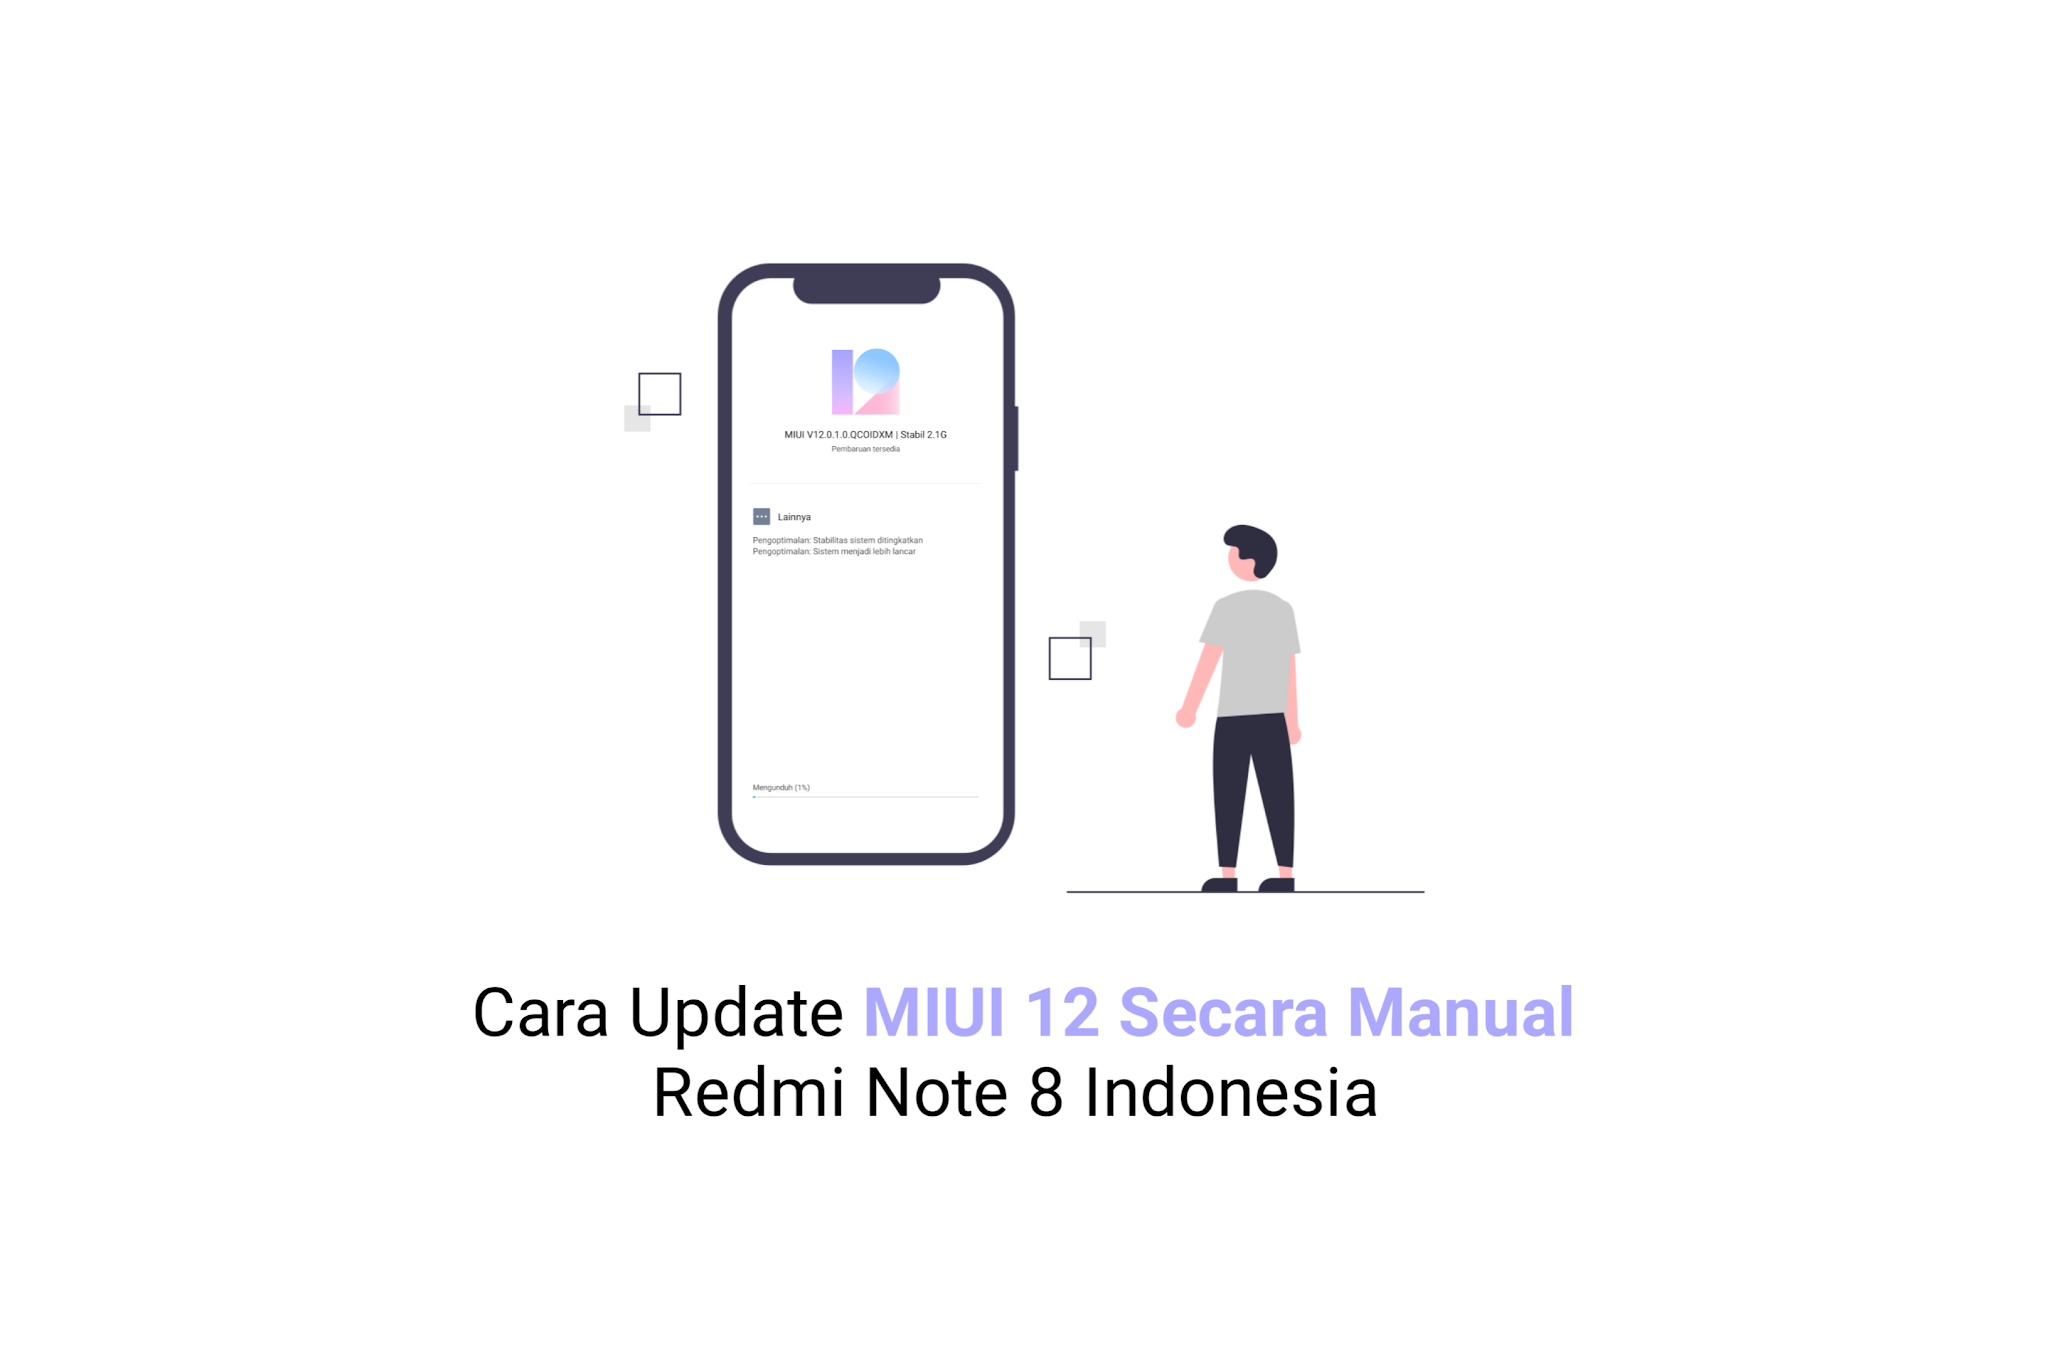 Update MIUI 12 Redmi Note 8 Indonesia Secara Manual